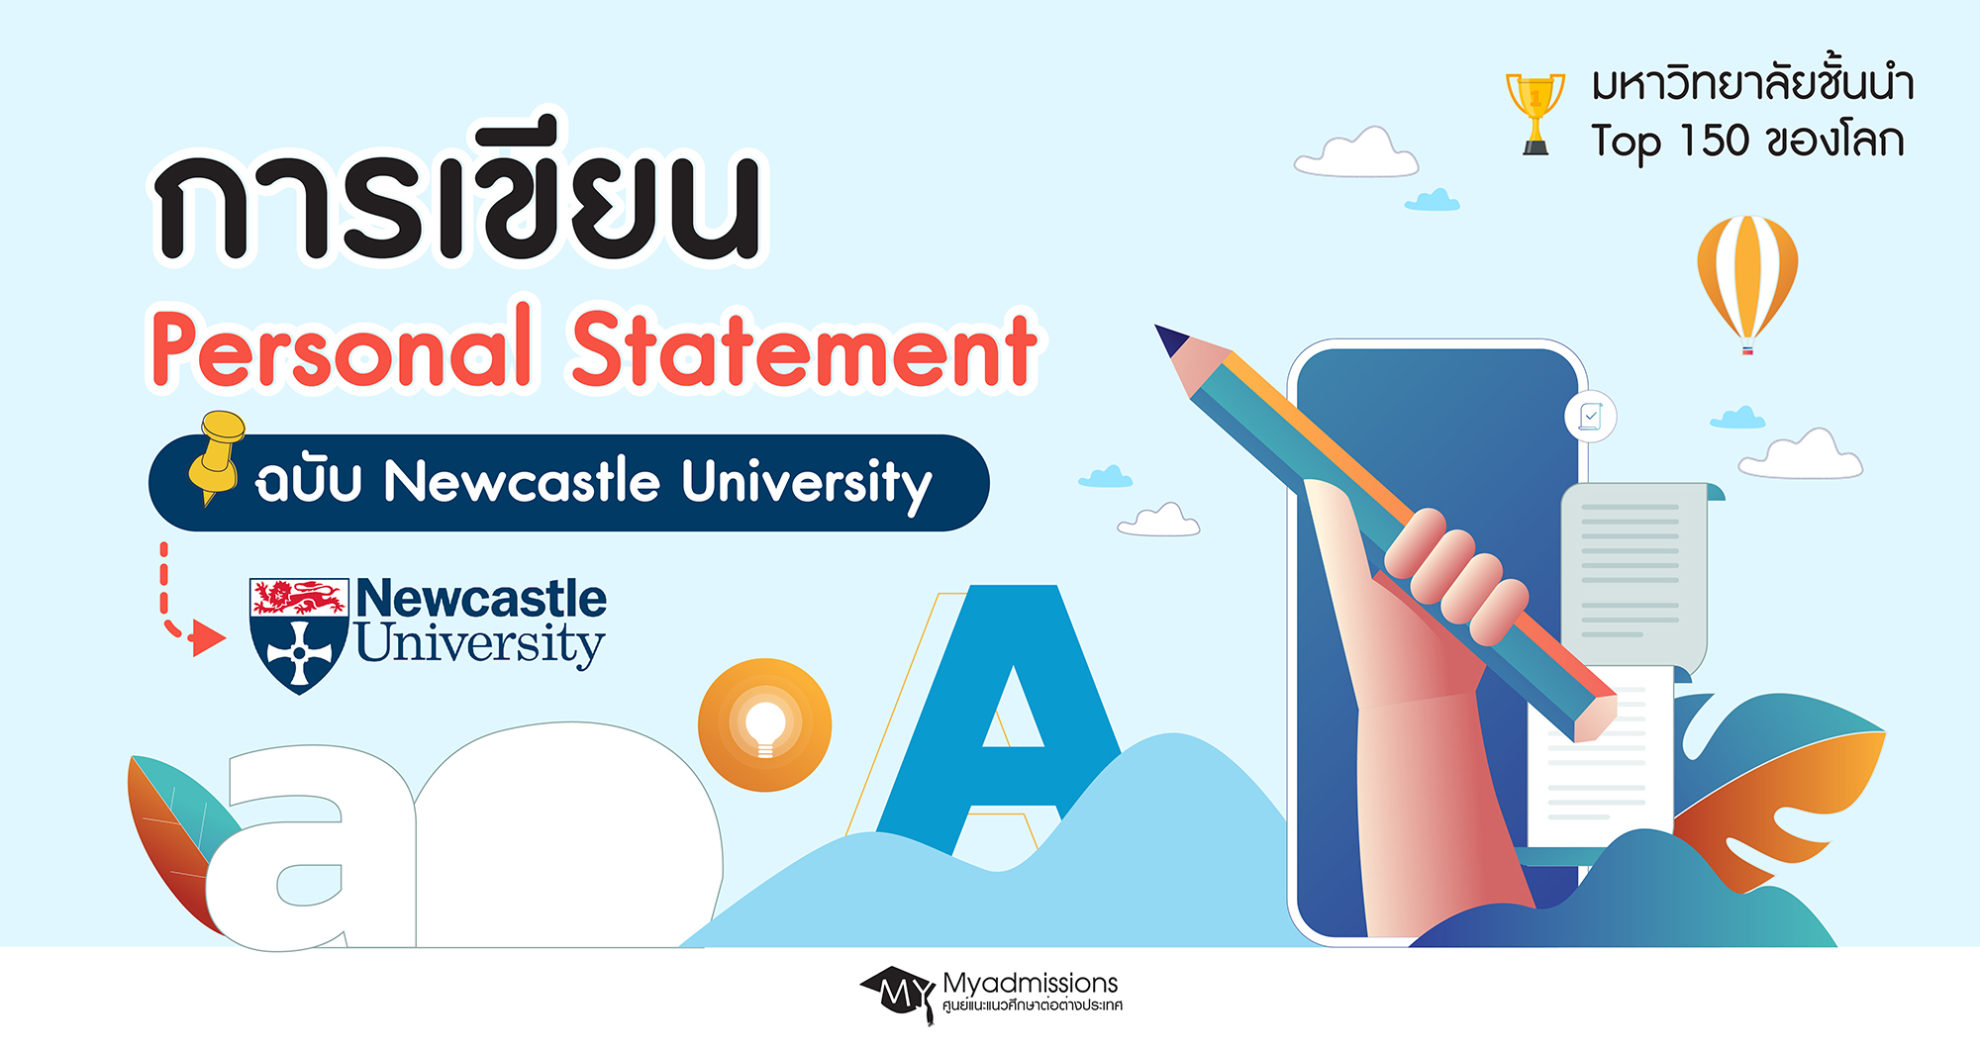 newcastle university personal statement